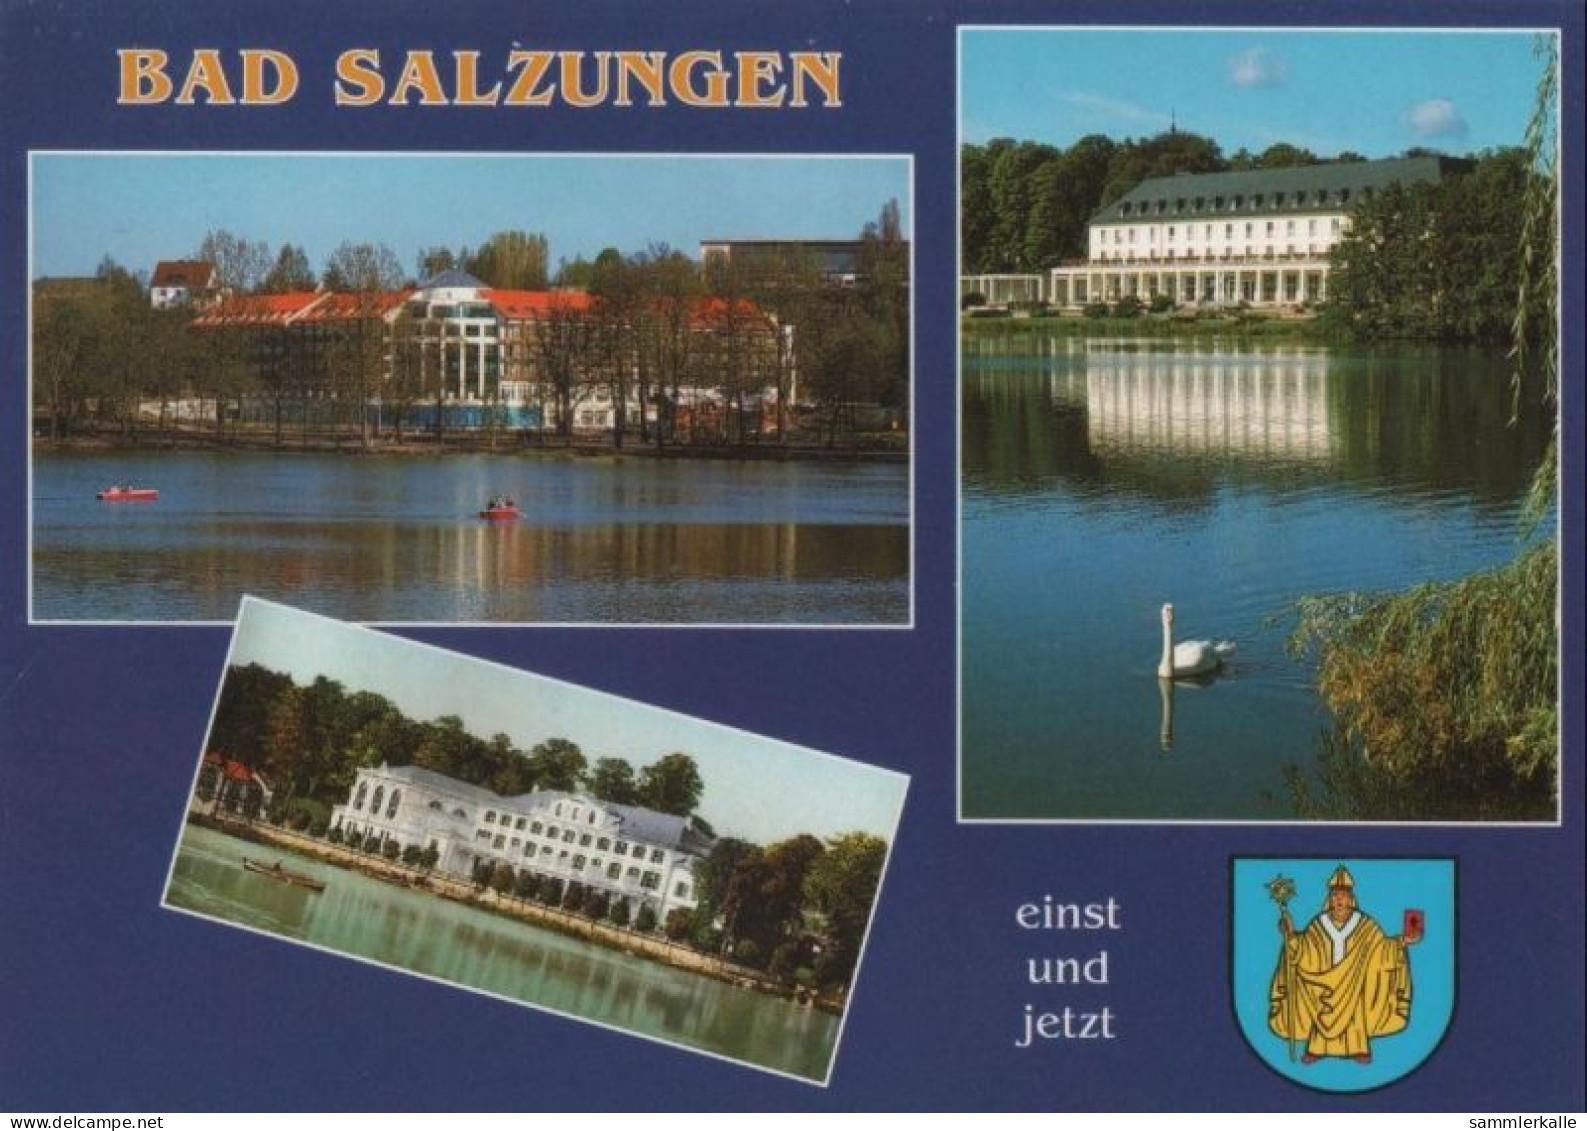 91295 - Bad Salzungen - Asklepios Parkklinik, Einst Und Jetzt - 2001 - Bad Salzungen